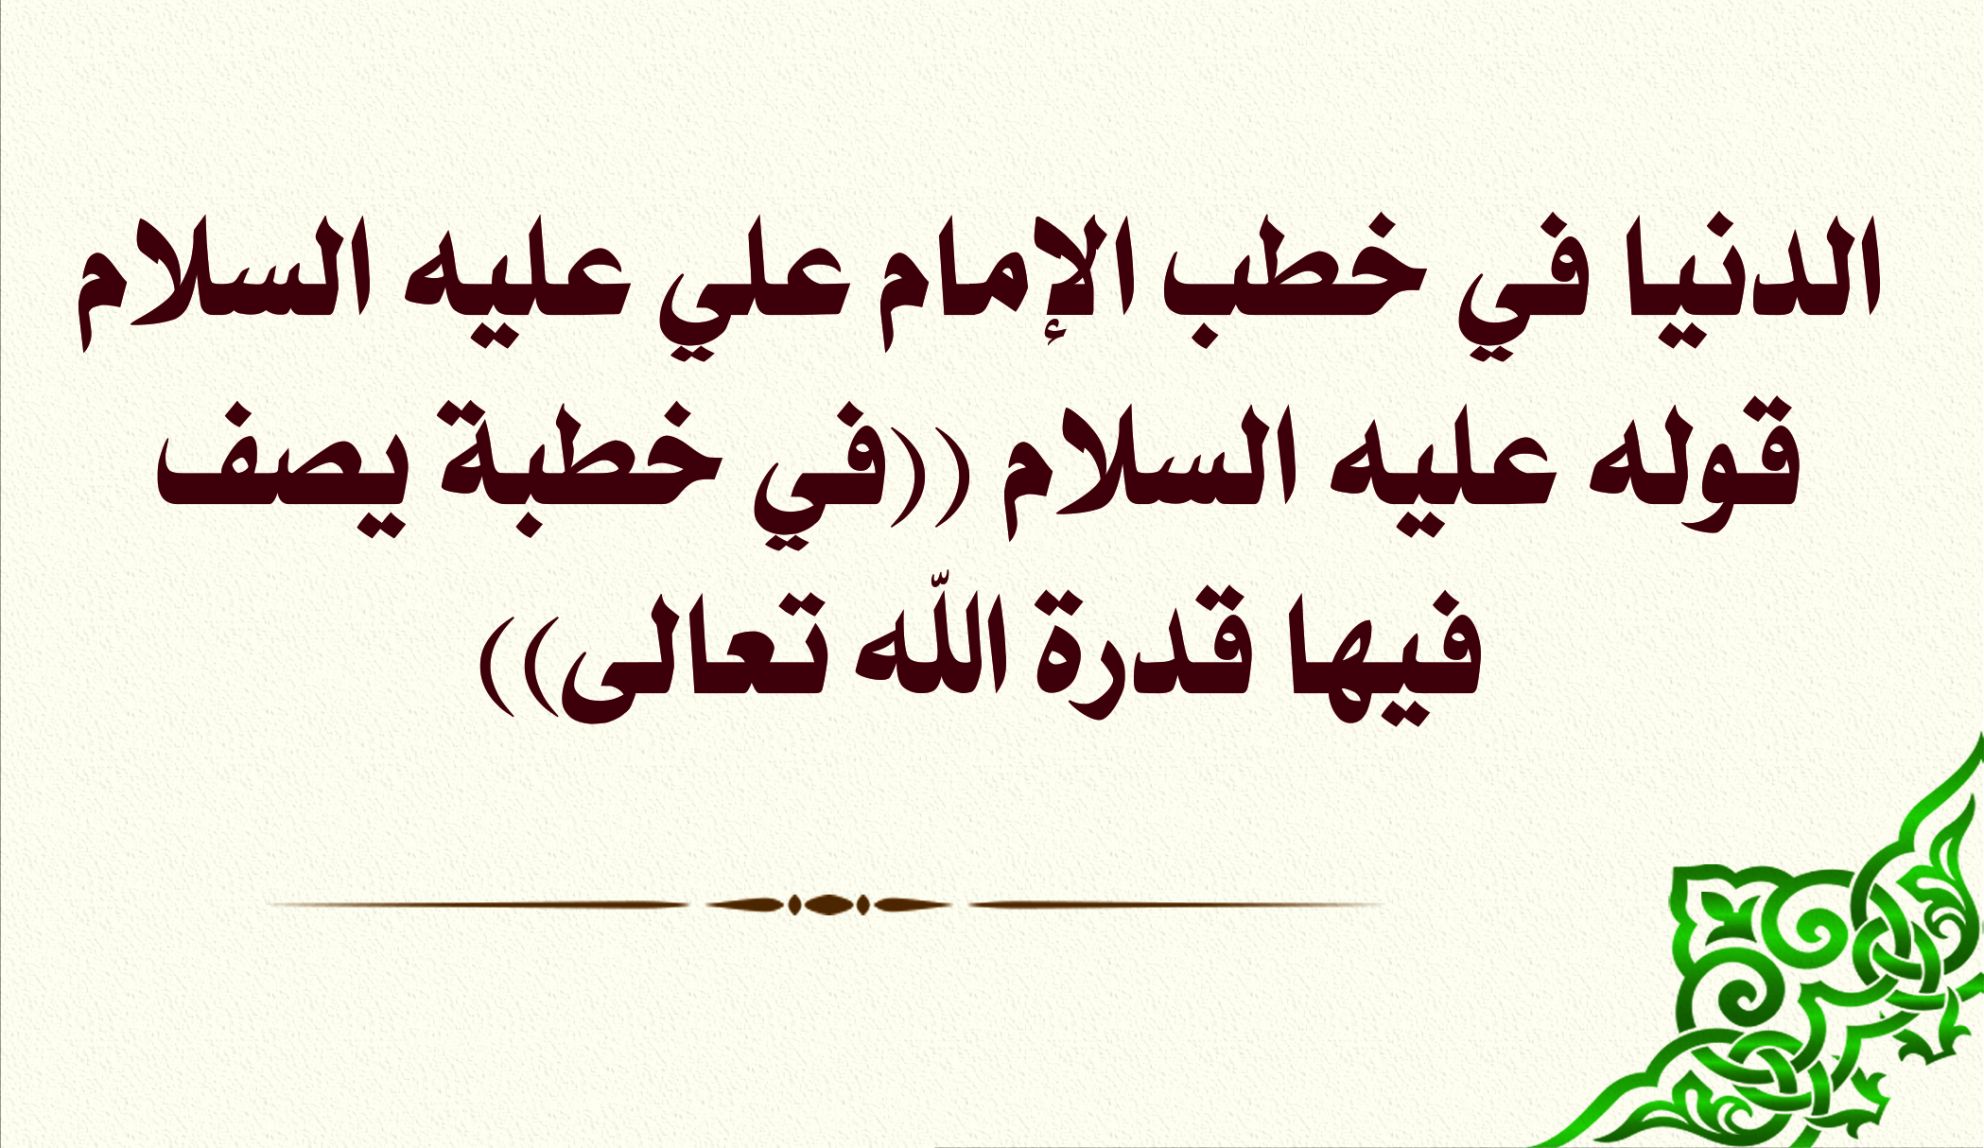 الدنيا في خطب الإمام علي عليه السلام قوله عليه السلام ((في خطبة يصف فيها قدرة الله تعالى))